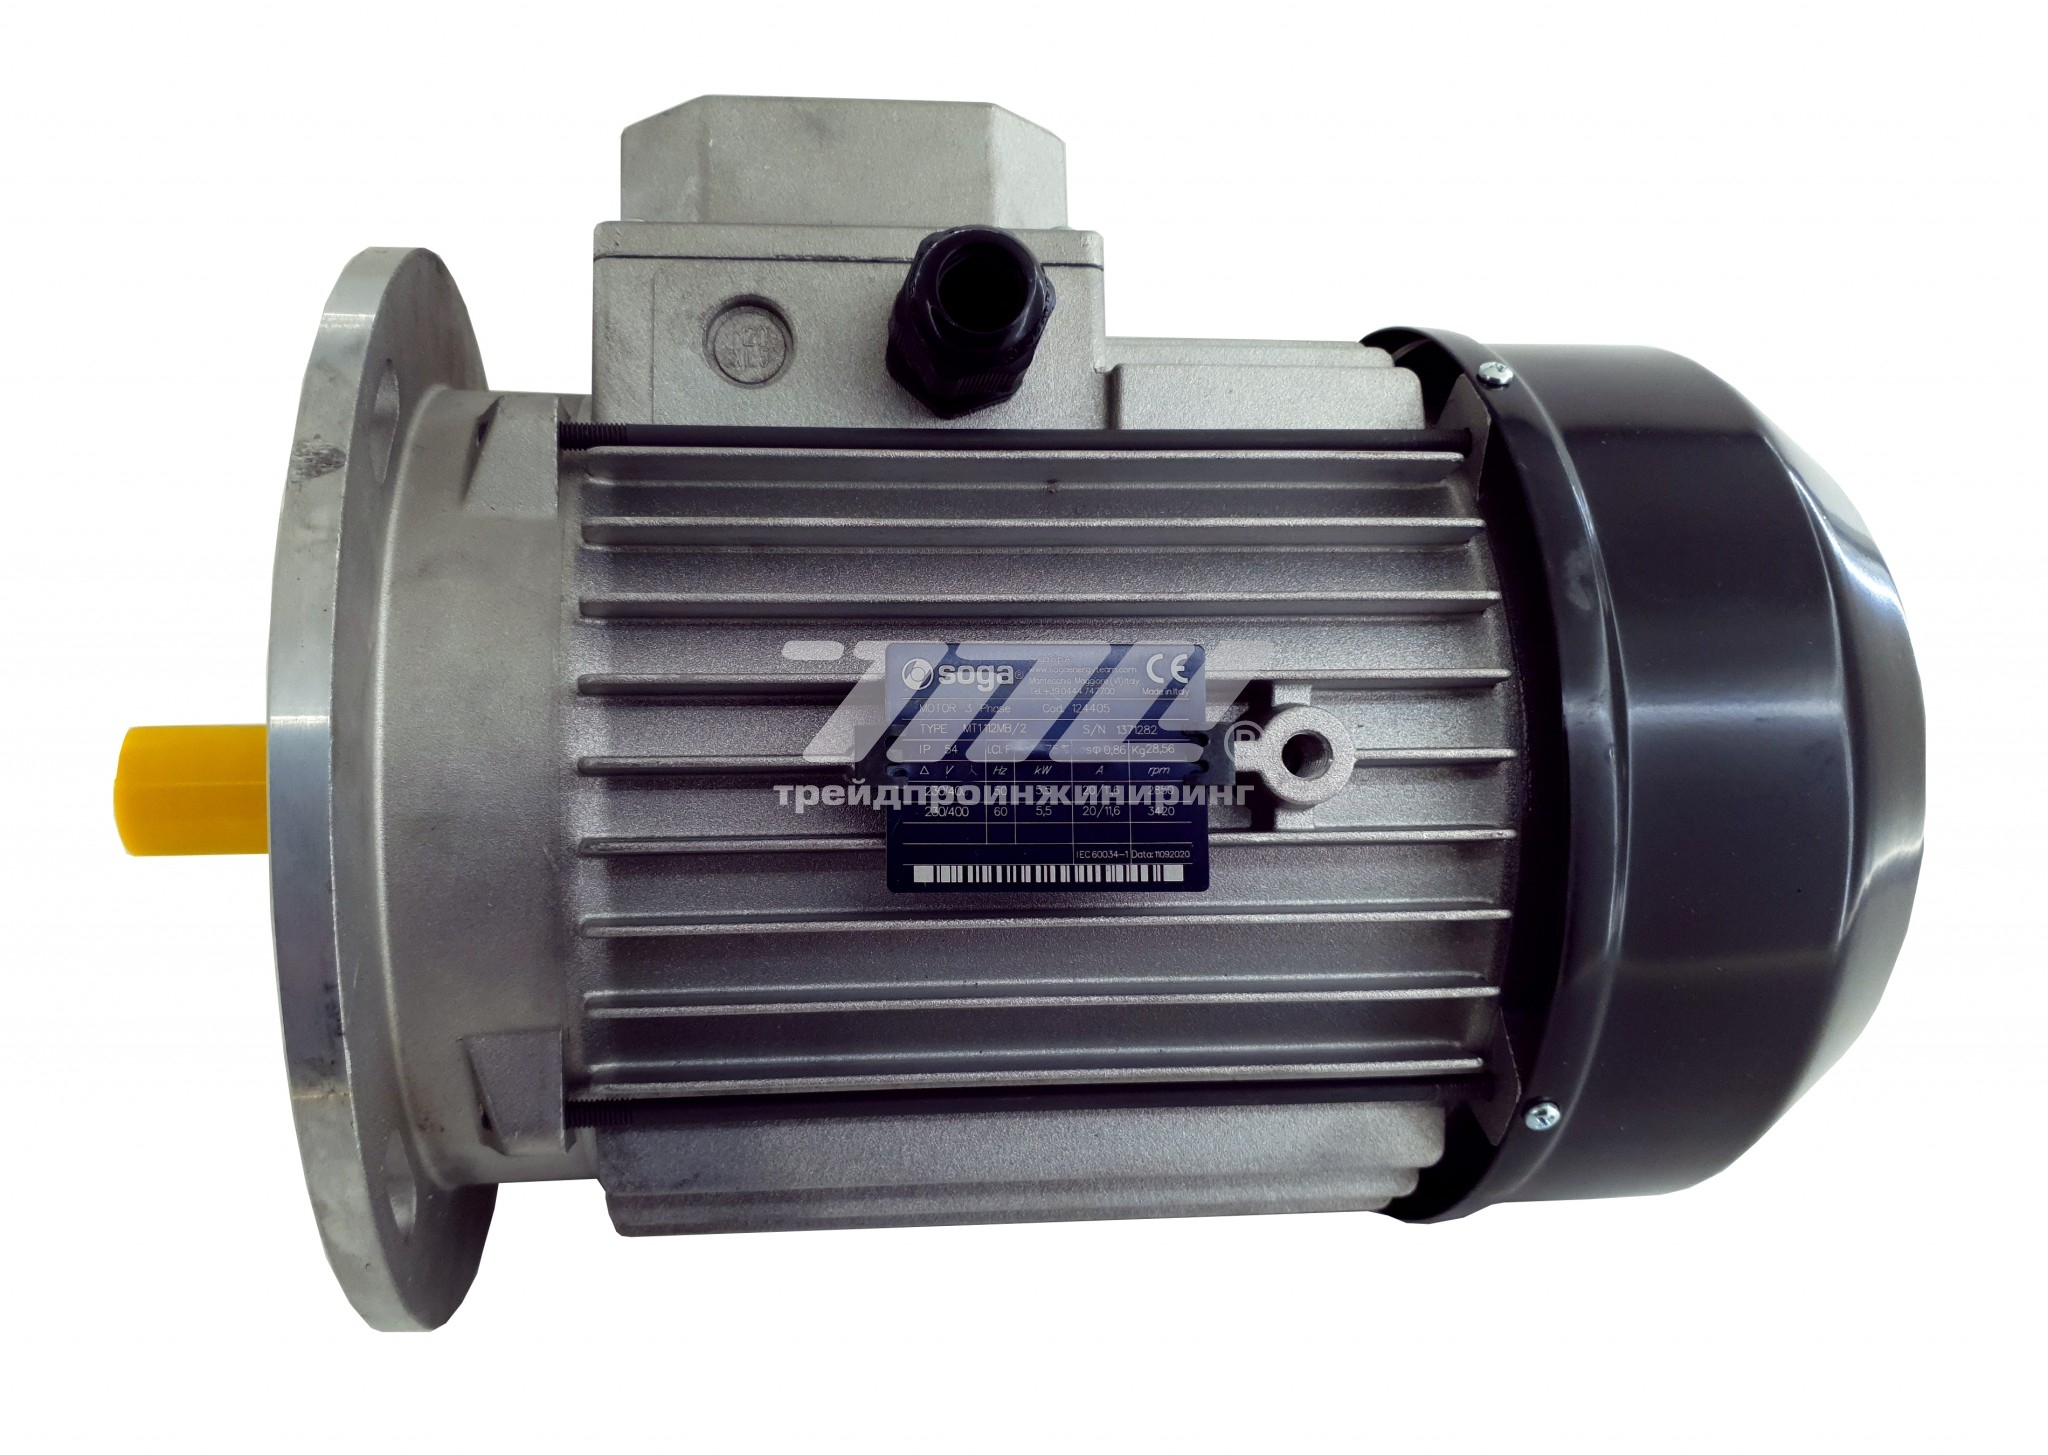 158882 Электродвигатель MEC112-B5-2P 5,5кВт (GAS P190) Фото